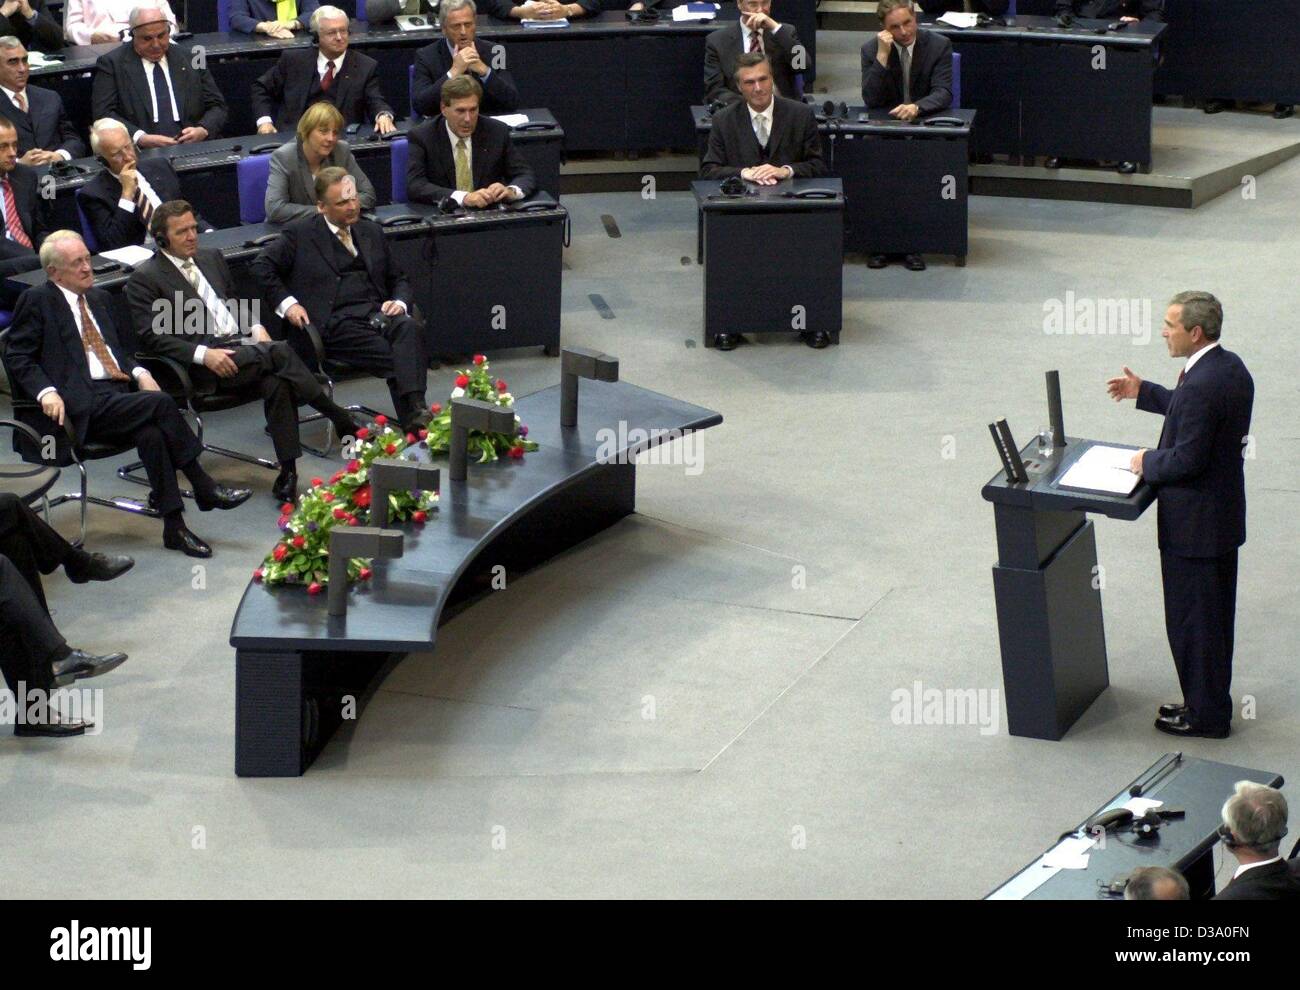 (Afp) - Le président américain George W. Bush livre son discours en parlement allemand, le Bundestag, à Berlin, 23 mai 2002. Il a appelé à une apparence européenne conjointe contre les "ennemis de la liberté". Bush est venu sur une visite d'une semaine en Europe, l'Allemagne étant son premier arrêt. Banque D'Images